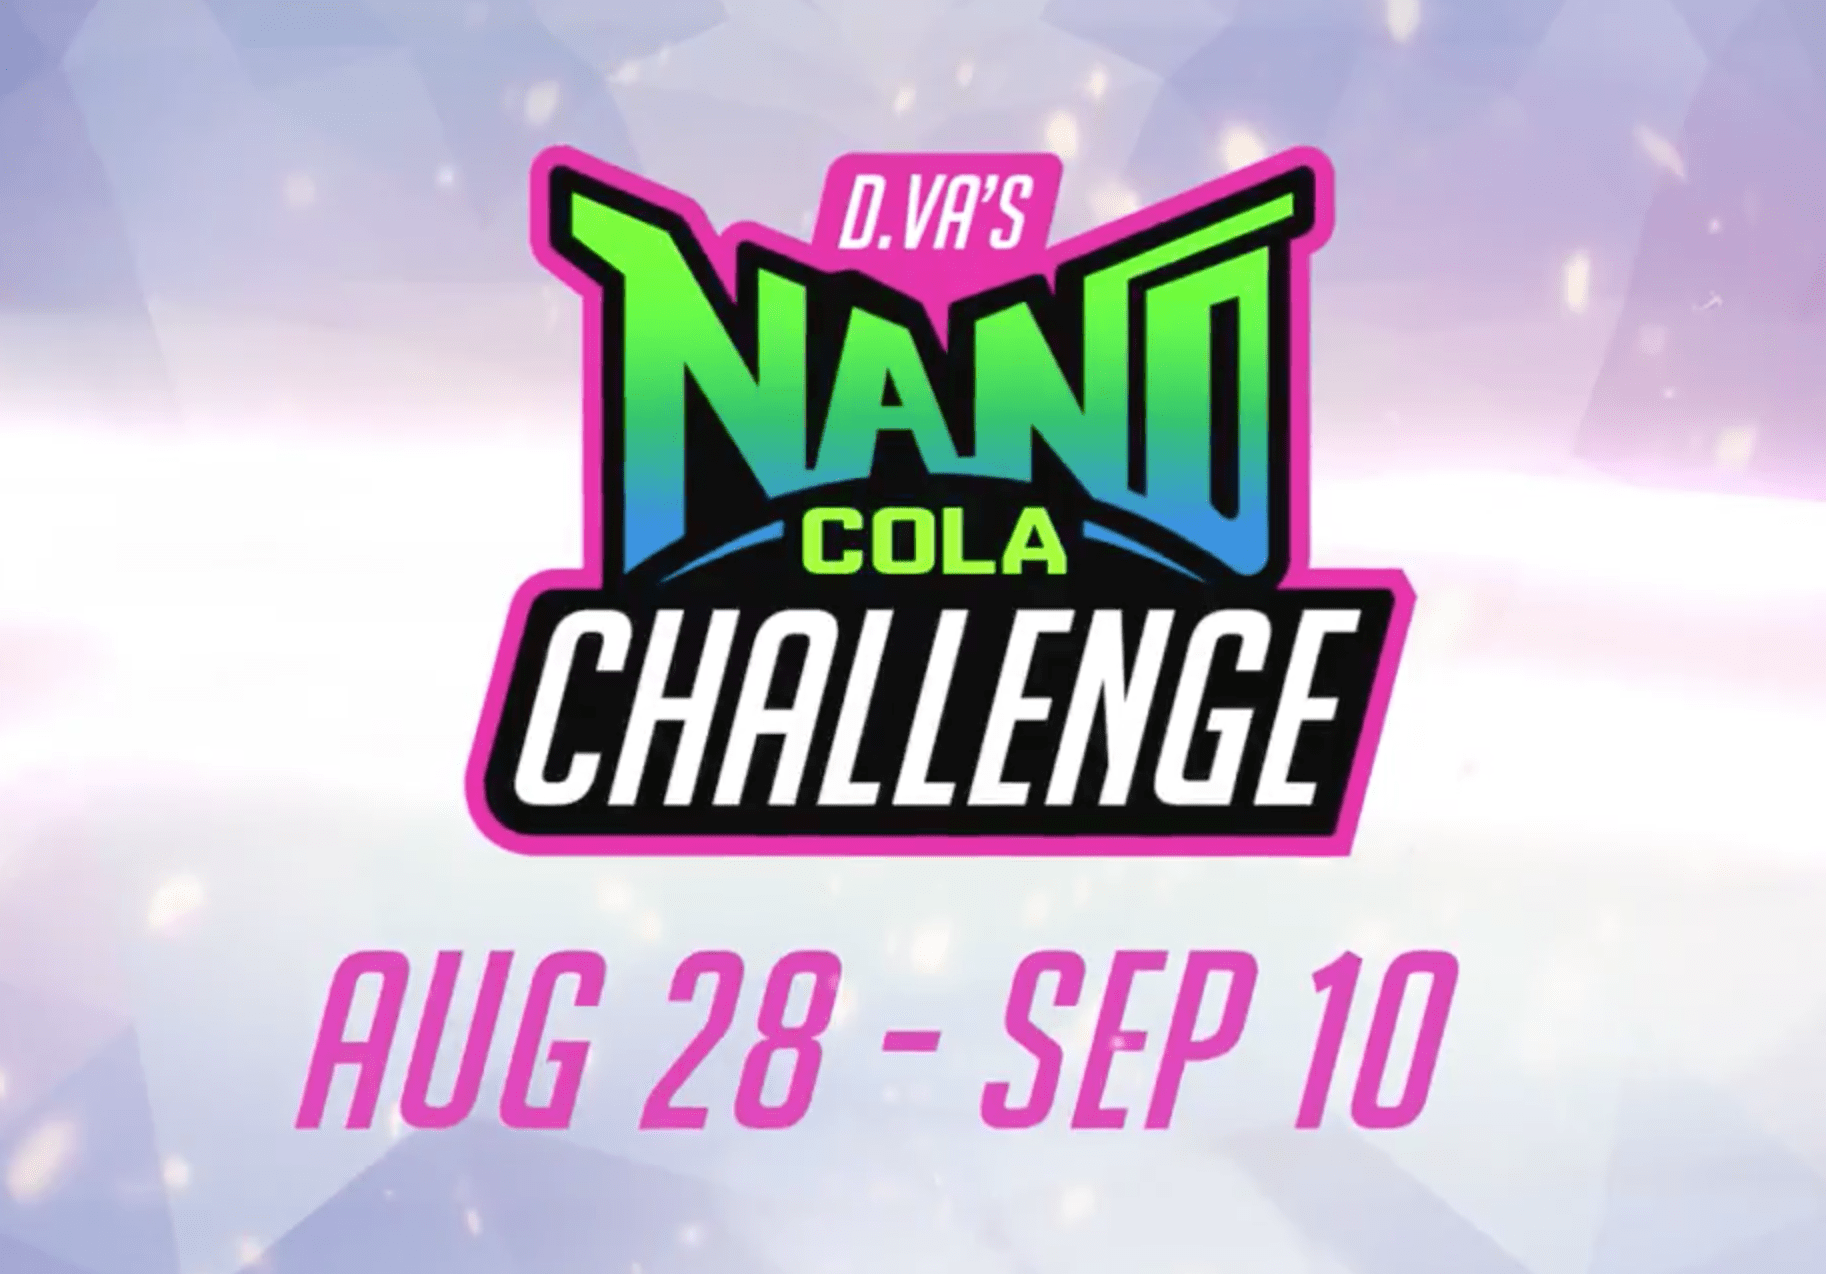 Overwatch announces D.Va's Nano Cola Challenge